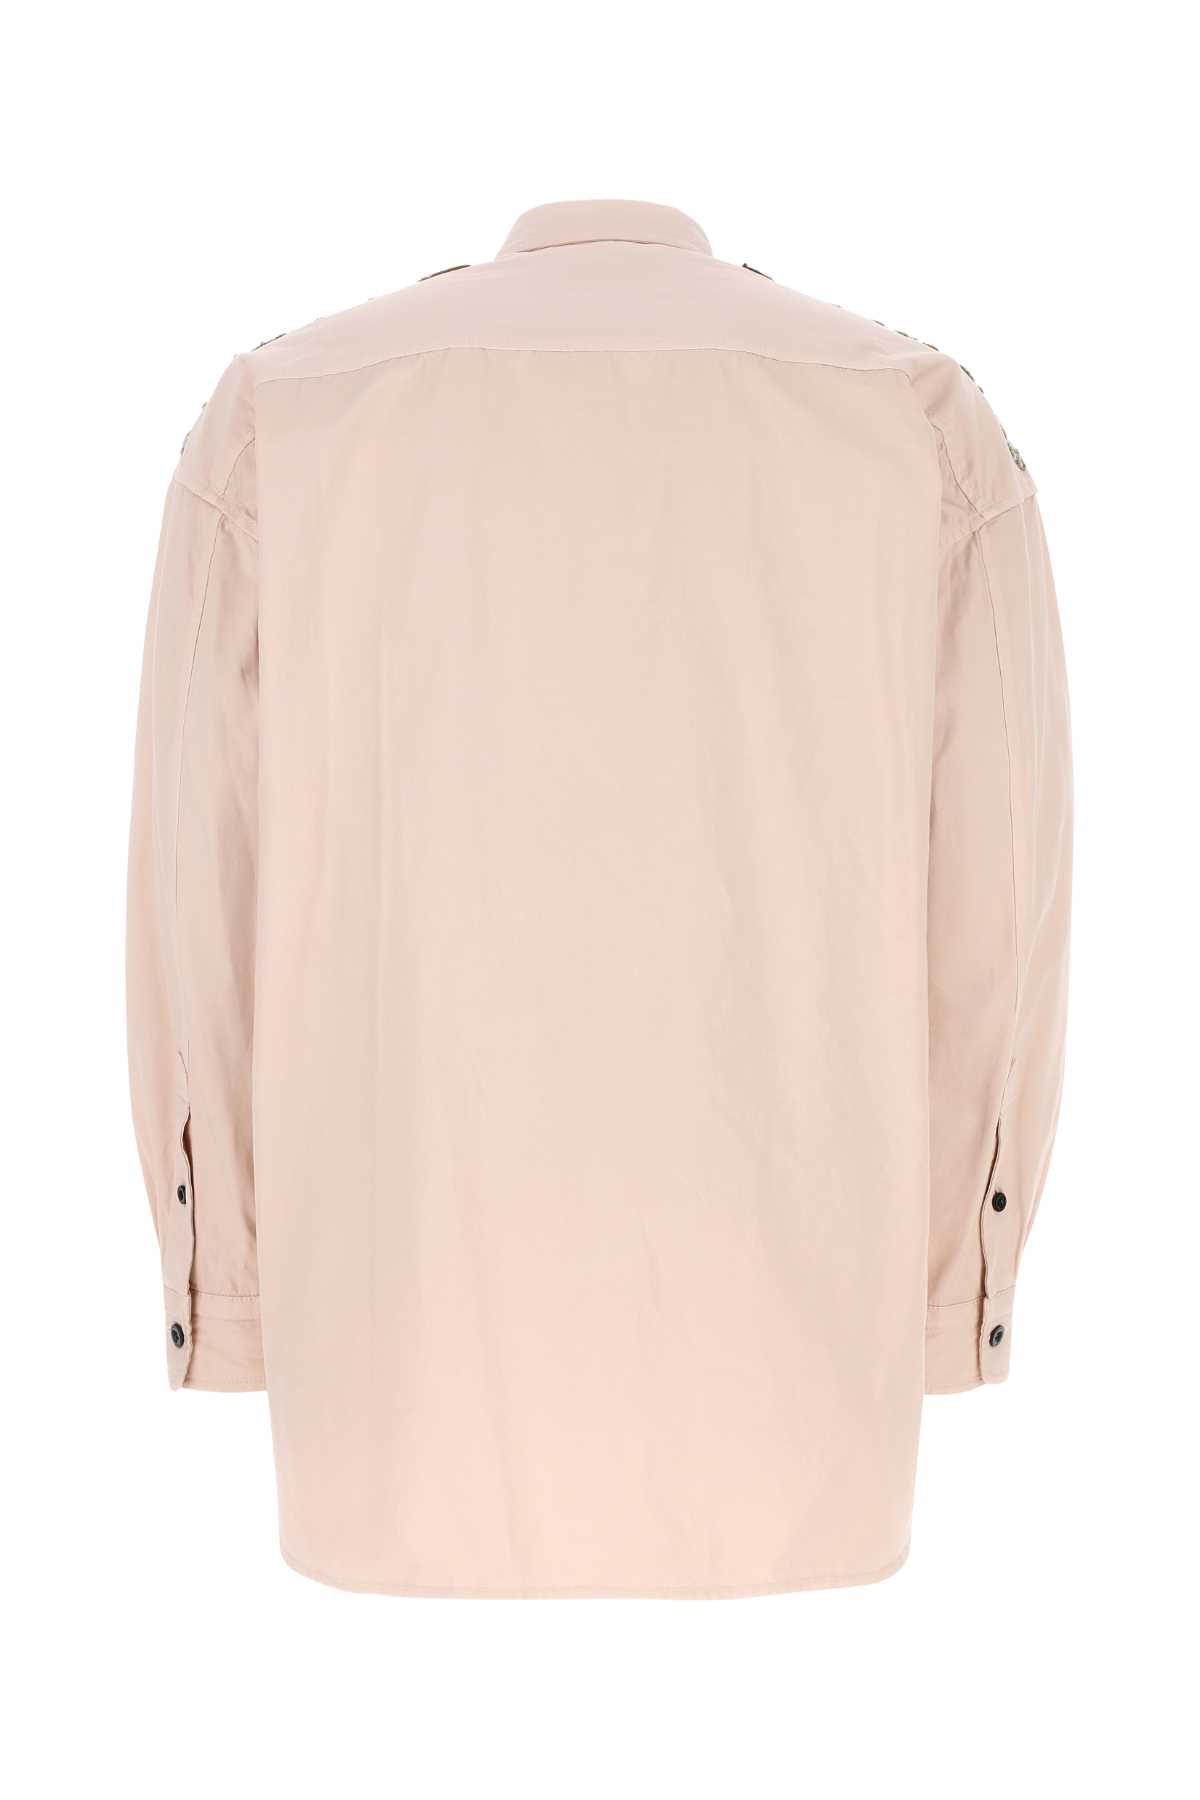 Sacai Light Pink Cotton Oversize Shirt In 789